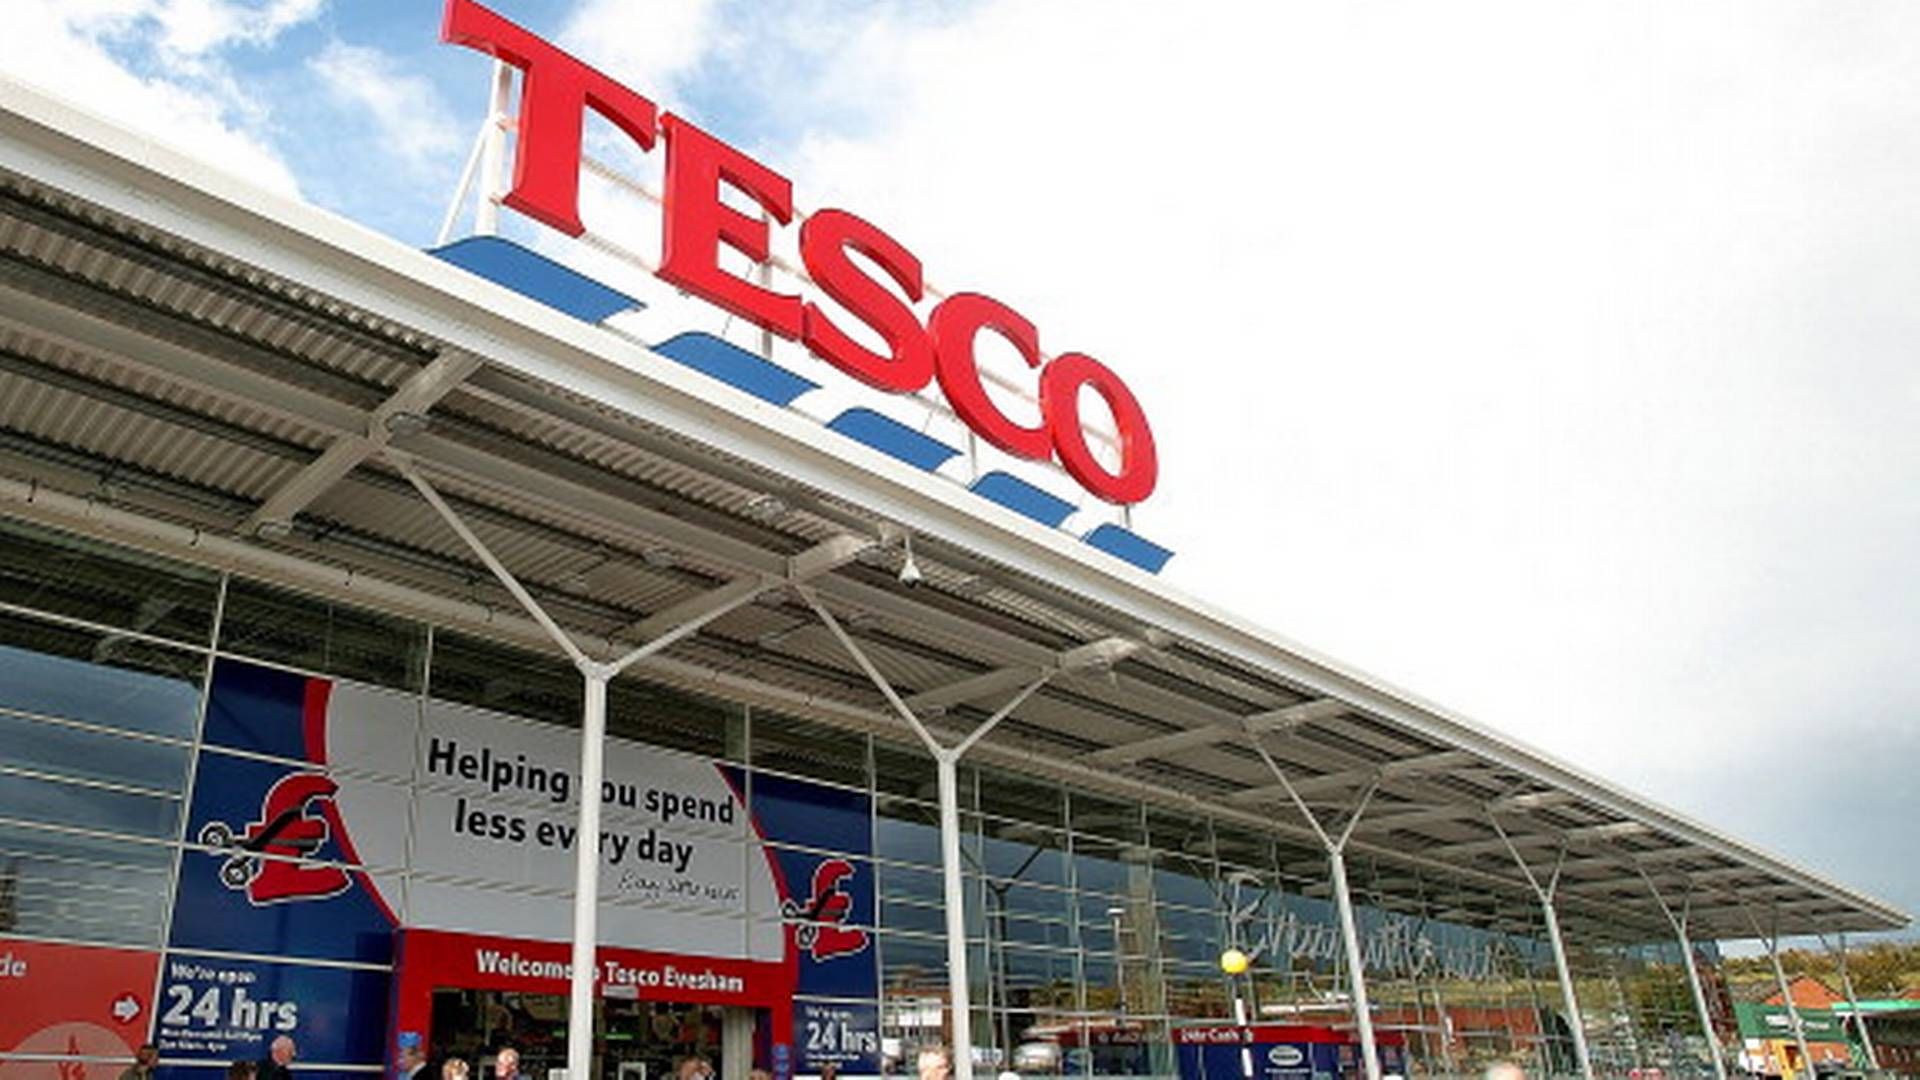 Storbritannien plages af butikstyverier og det har fået næste 90 topchefer, herunder fra Tesco, til sende et fælles opråb til politikerne.